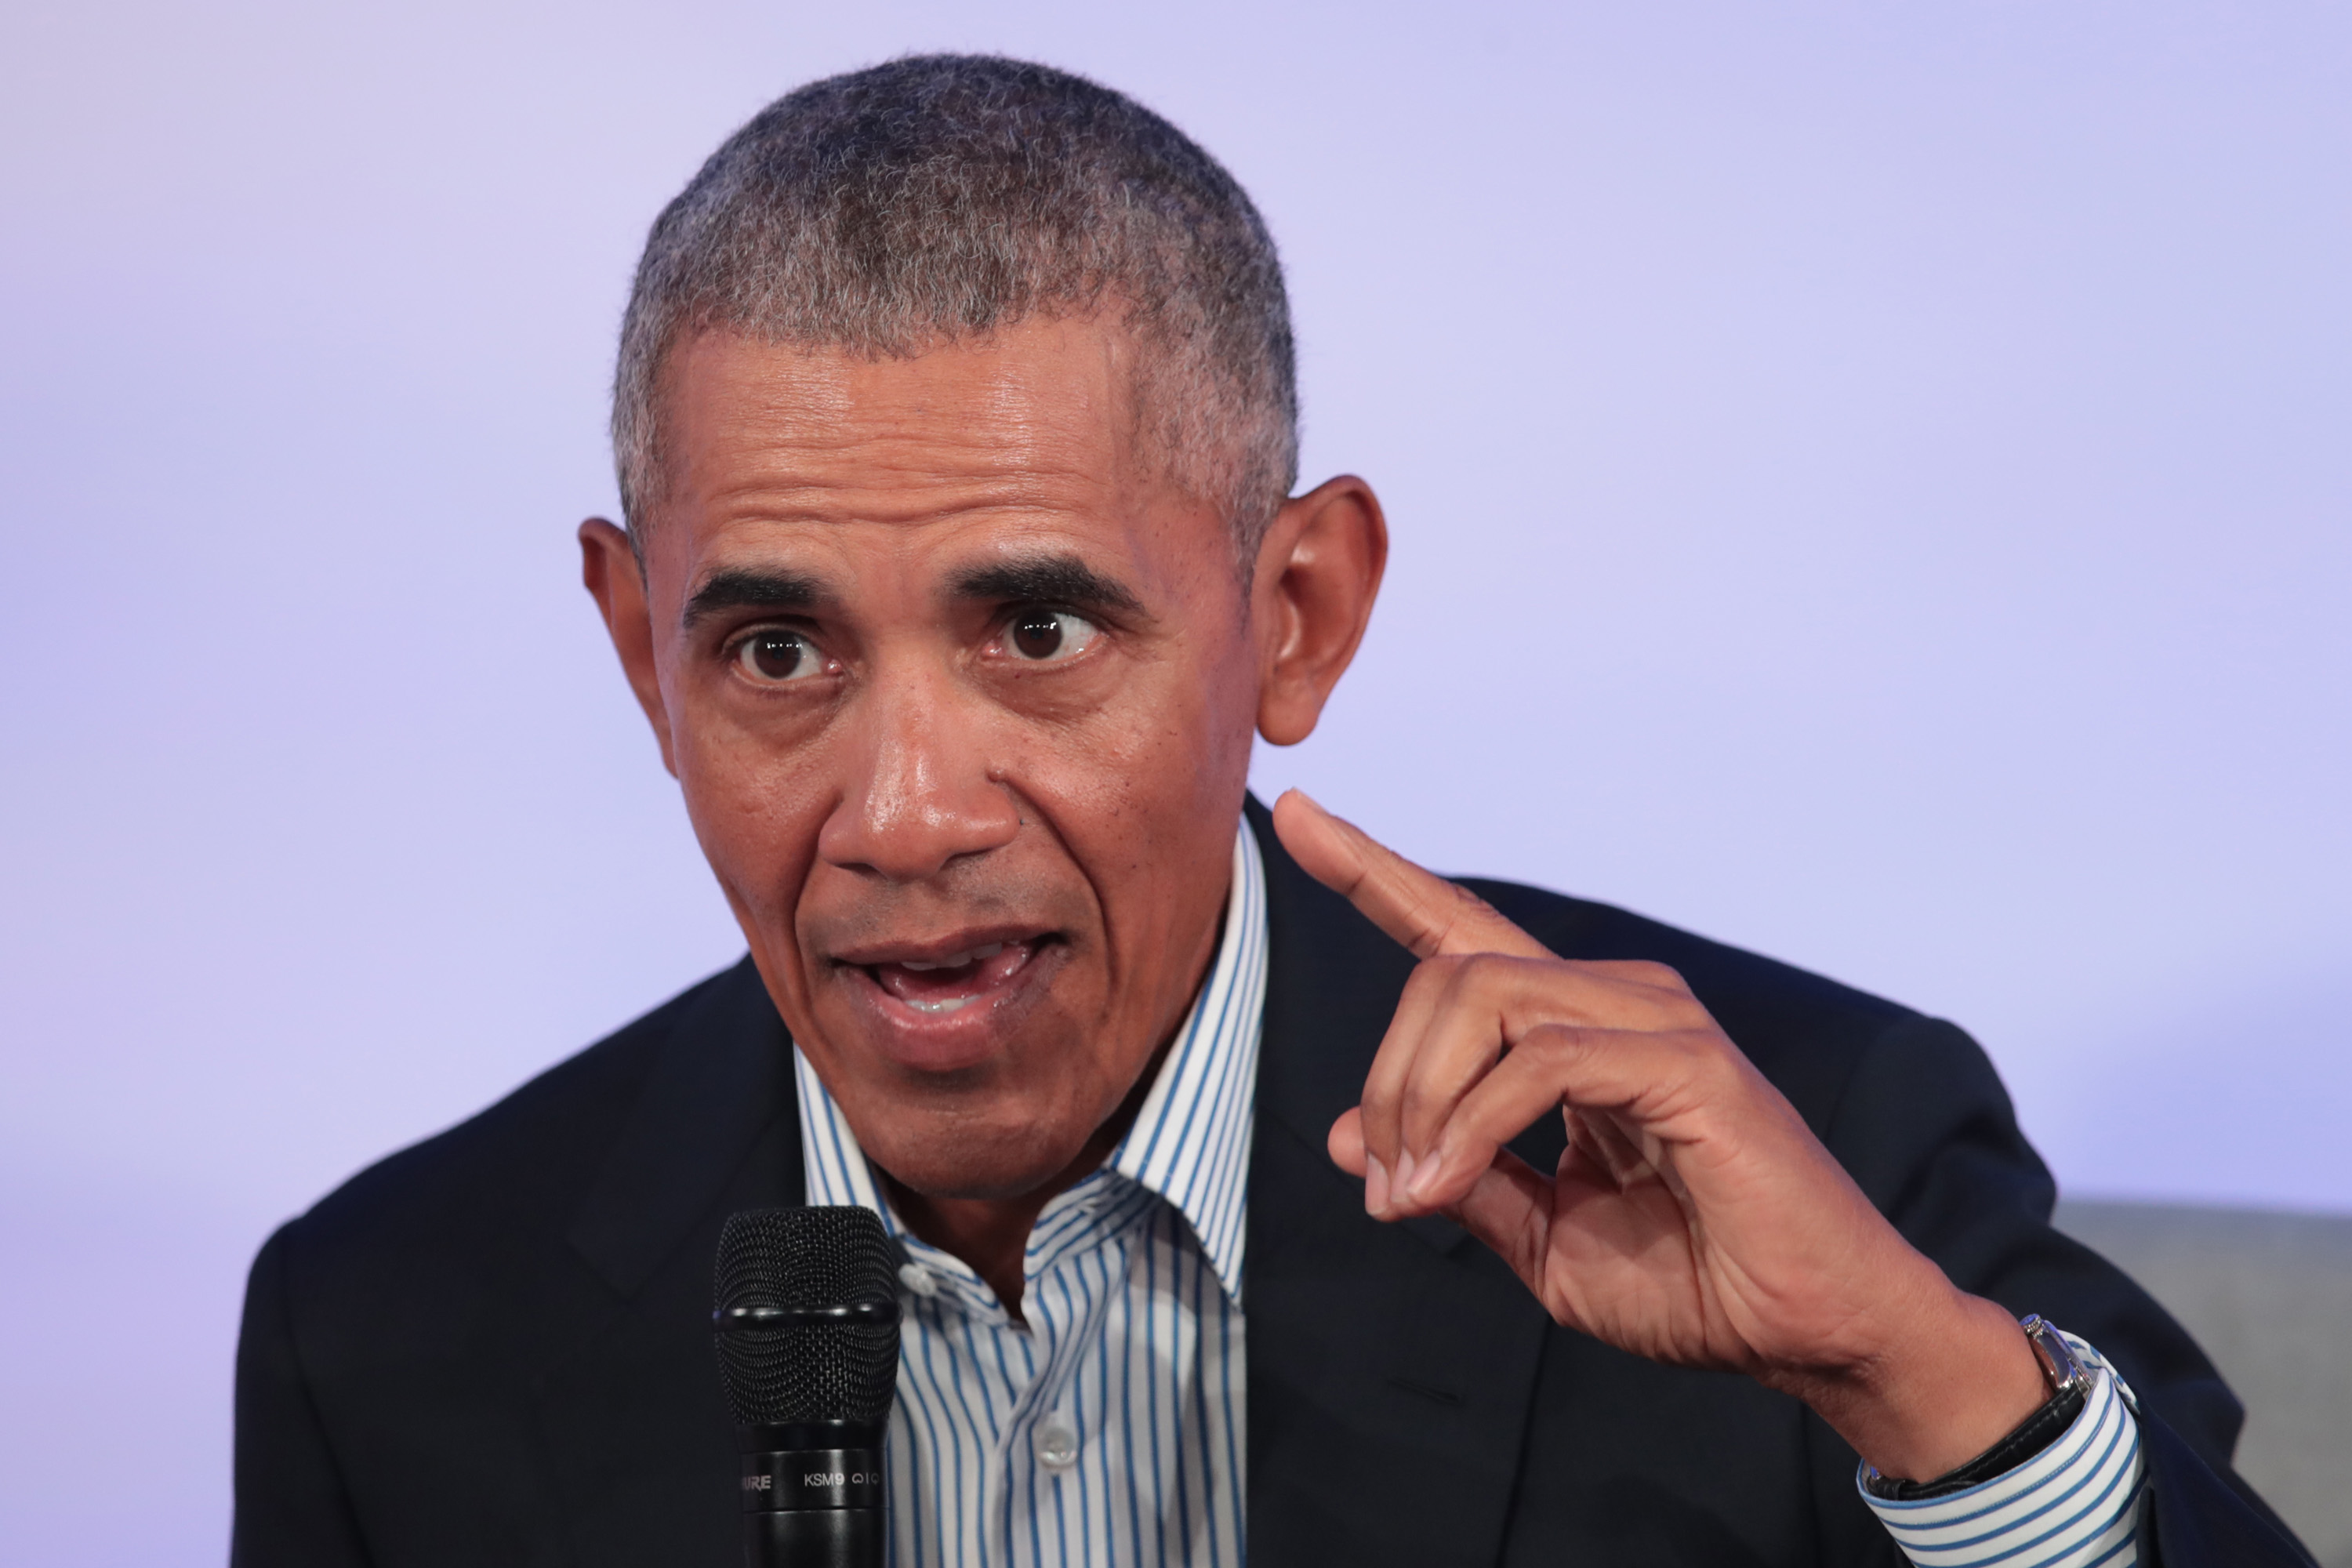 Barack Obama speaks at a lectern in October 2019.